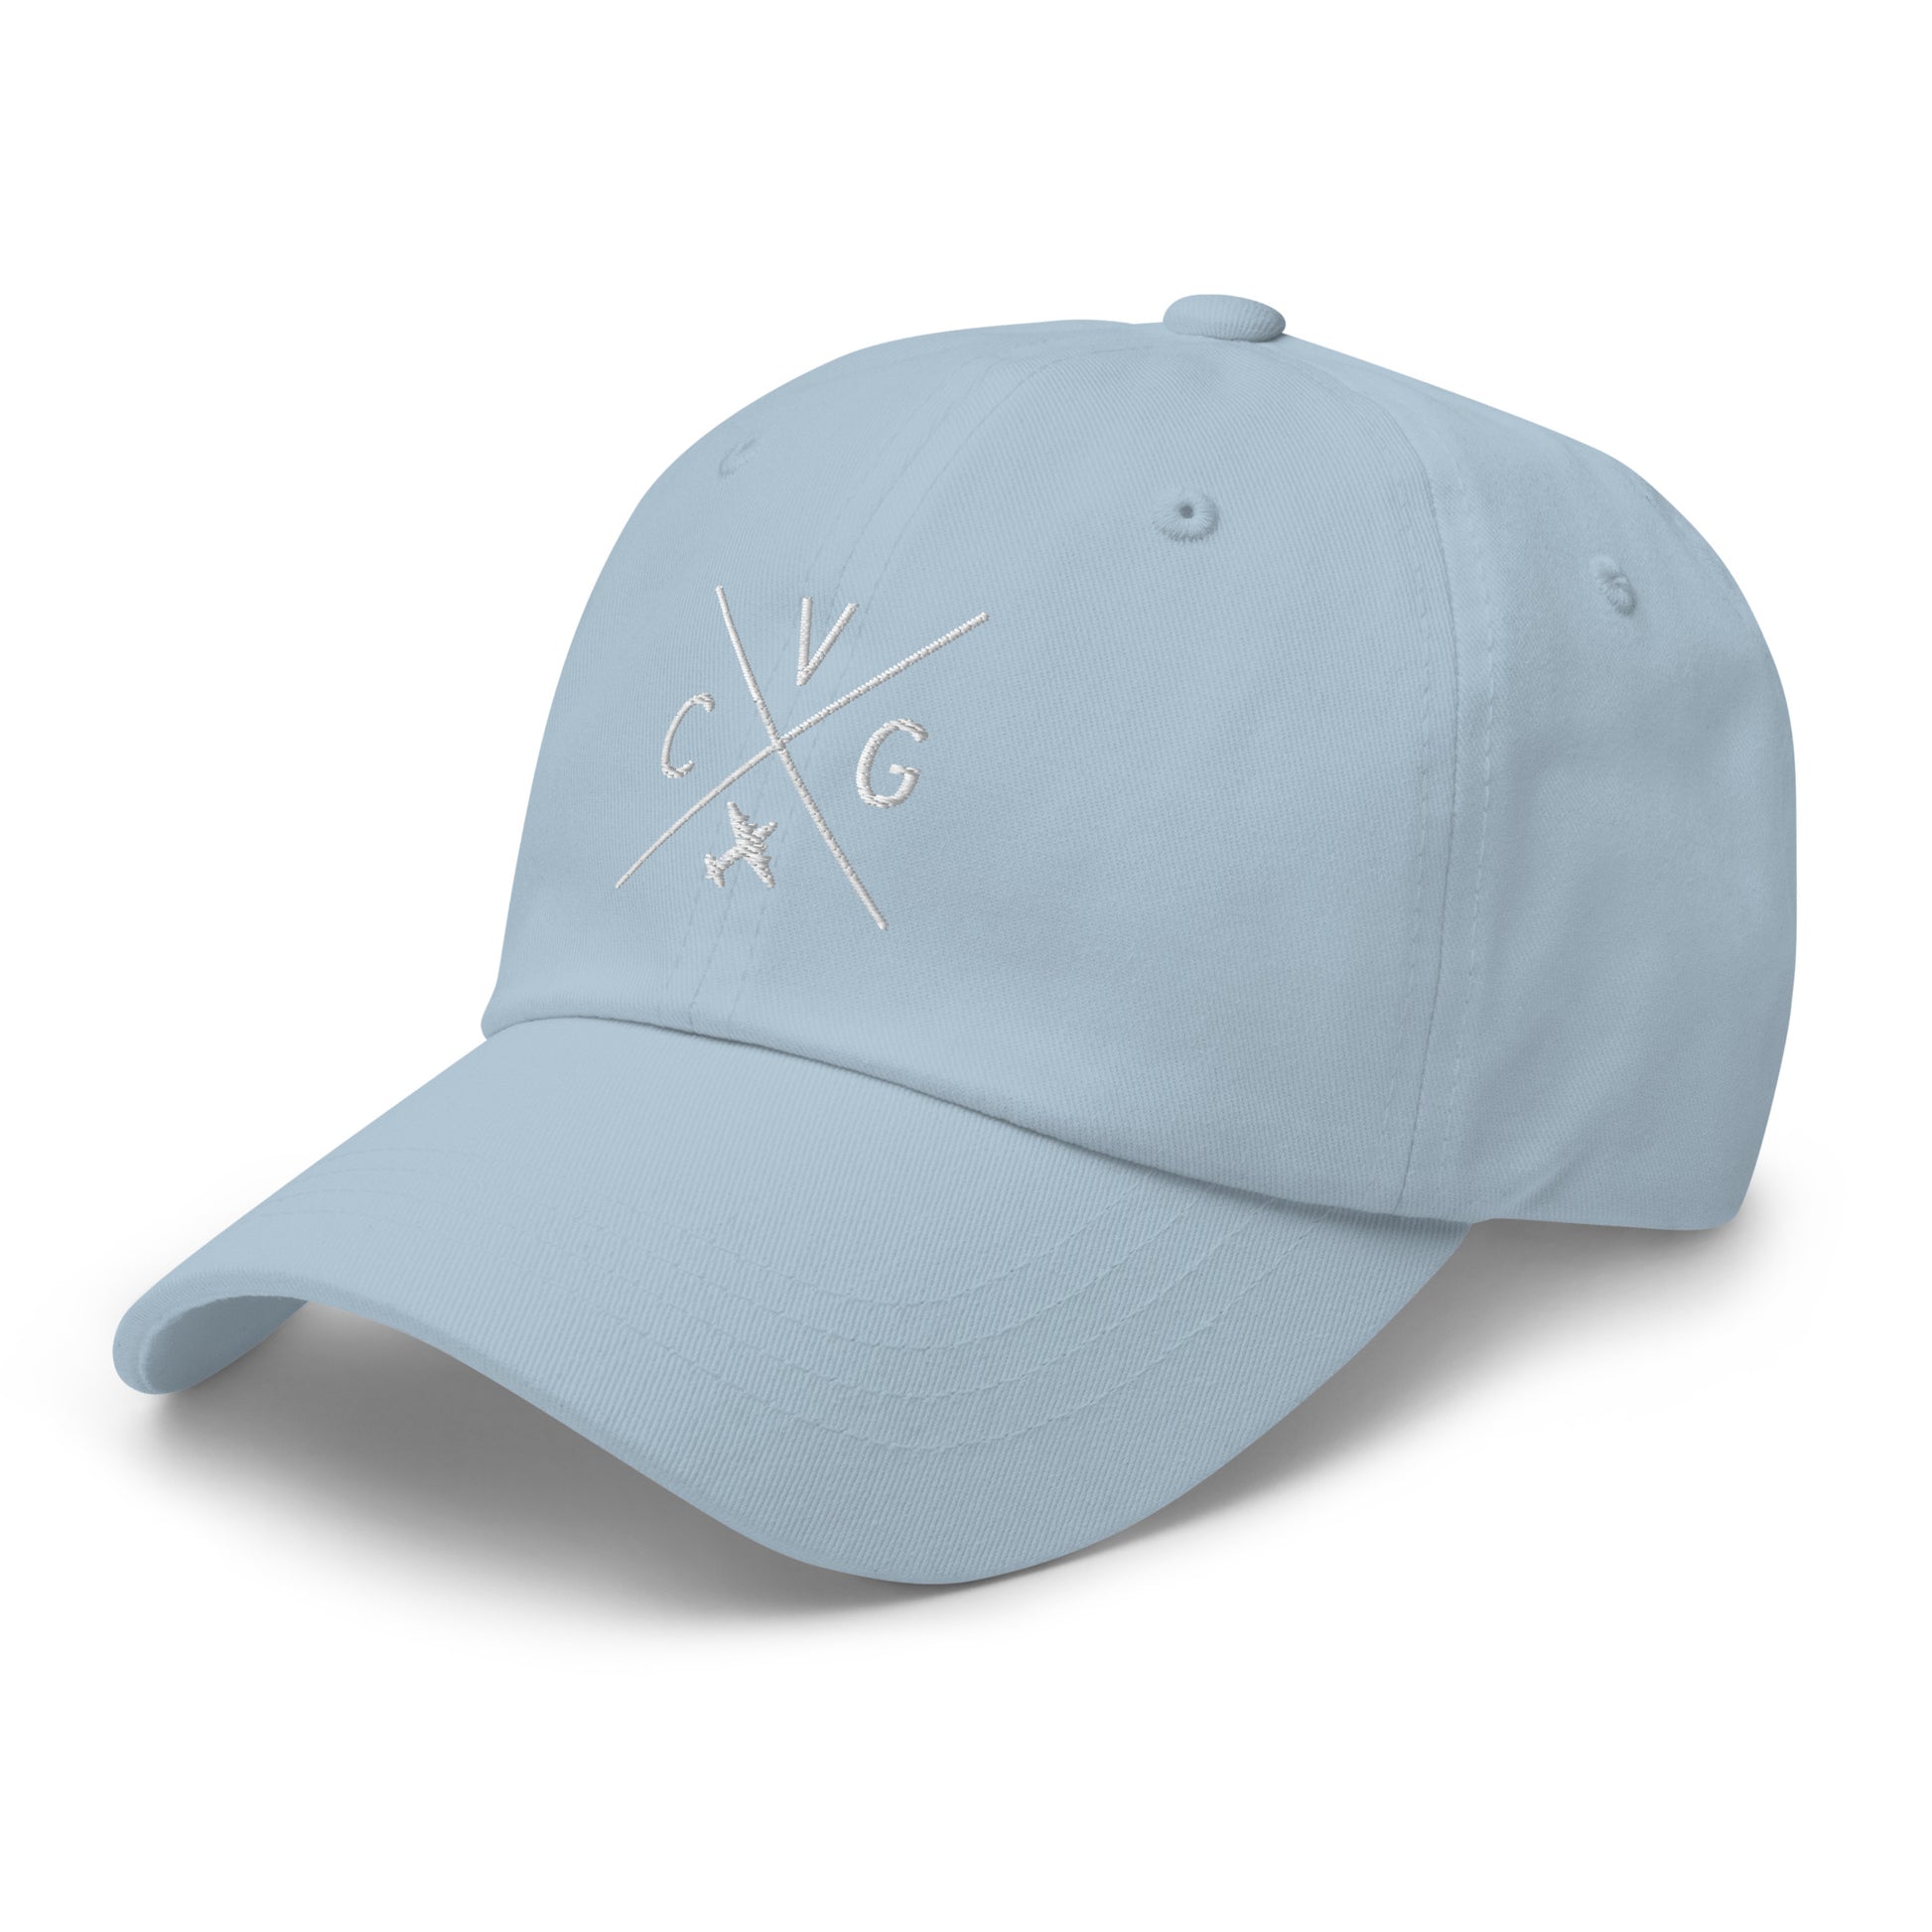 Crossed-X Dad Hat - White • CVG Cincinnati • YHM Designs - Image 30